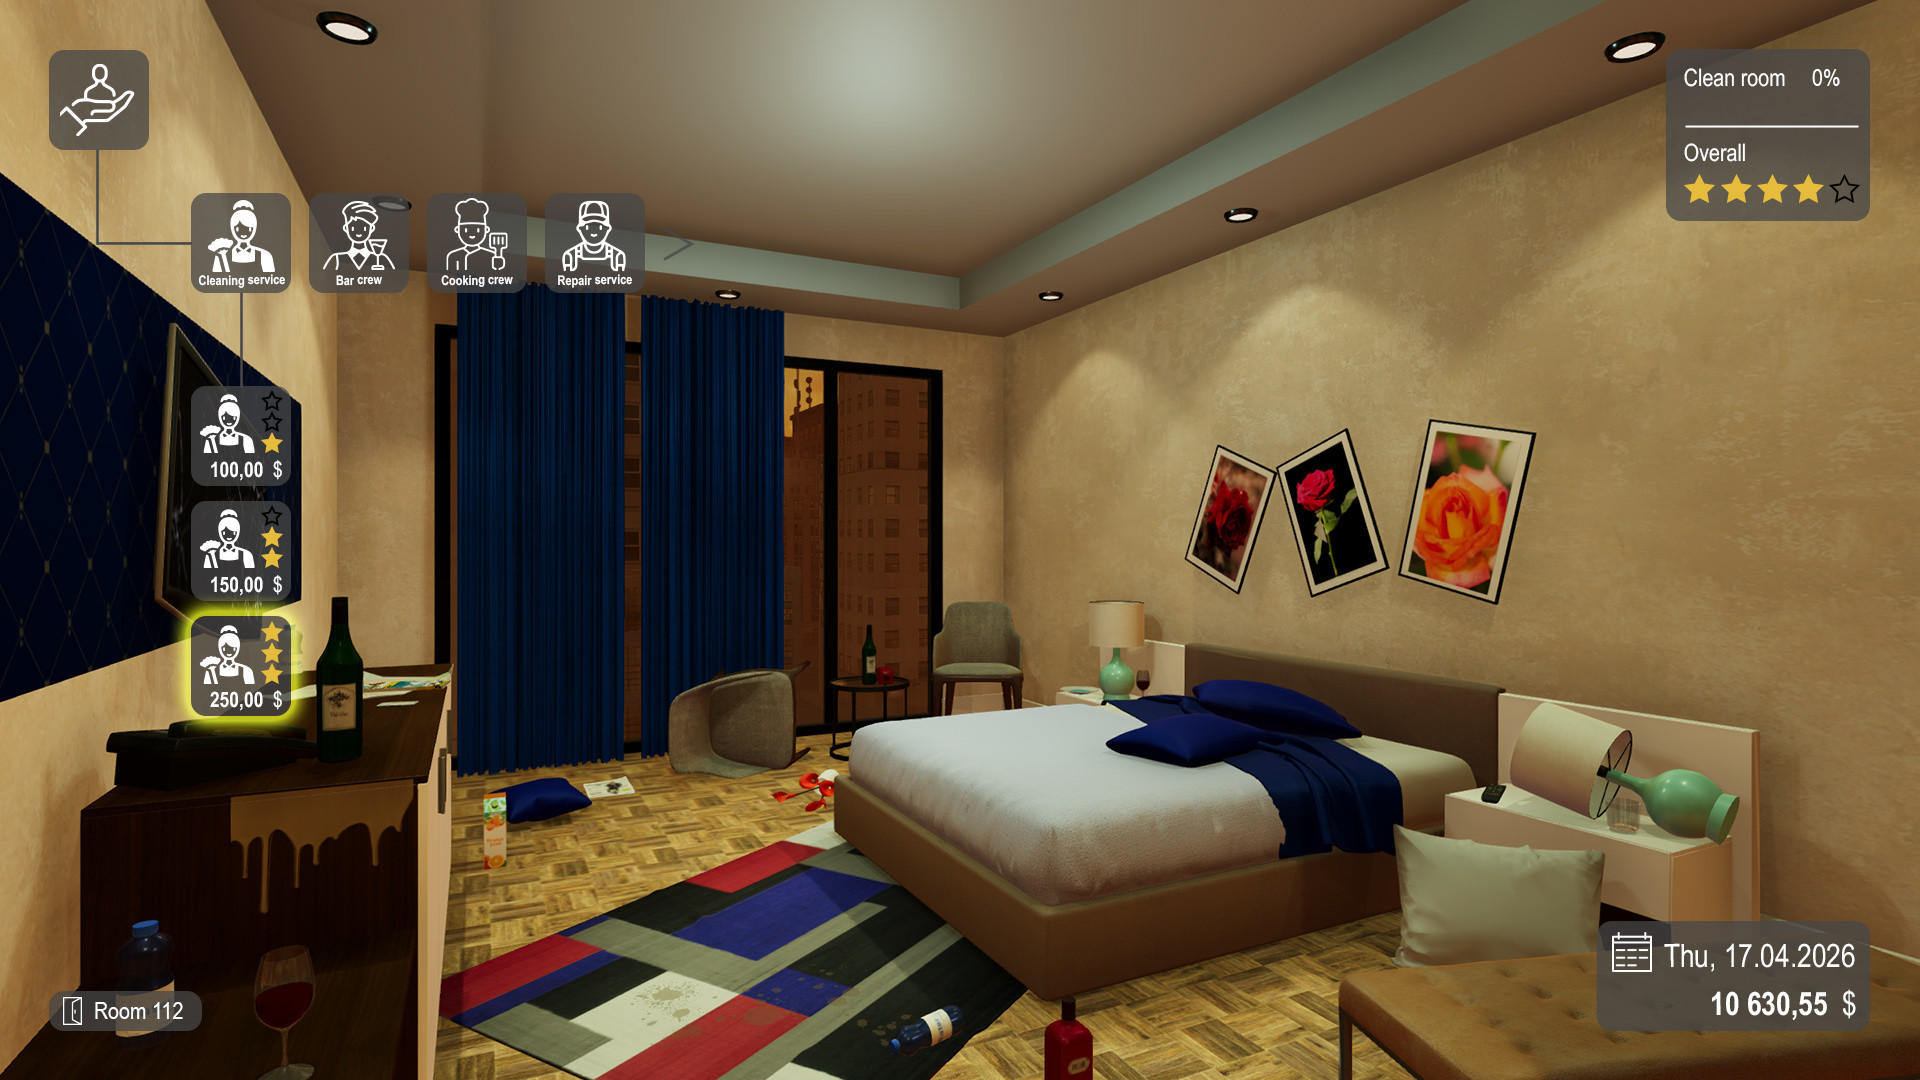 Screenshot of Hotel Simulator